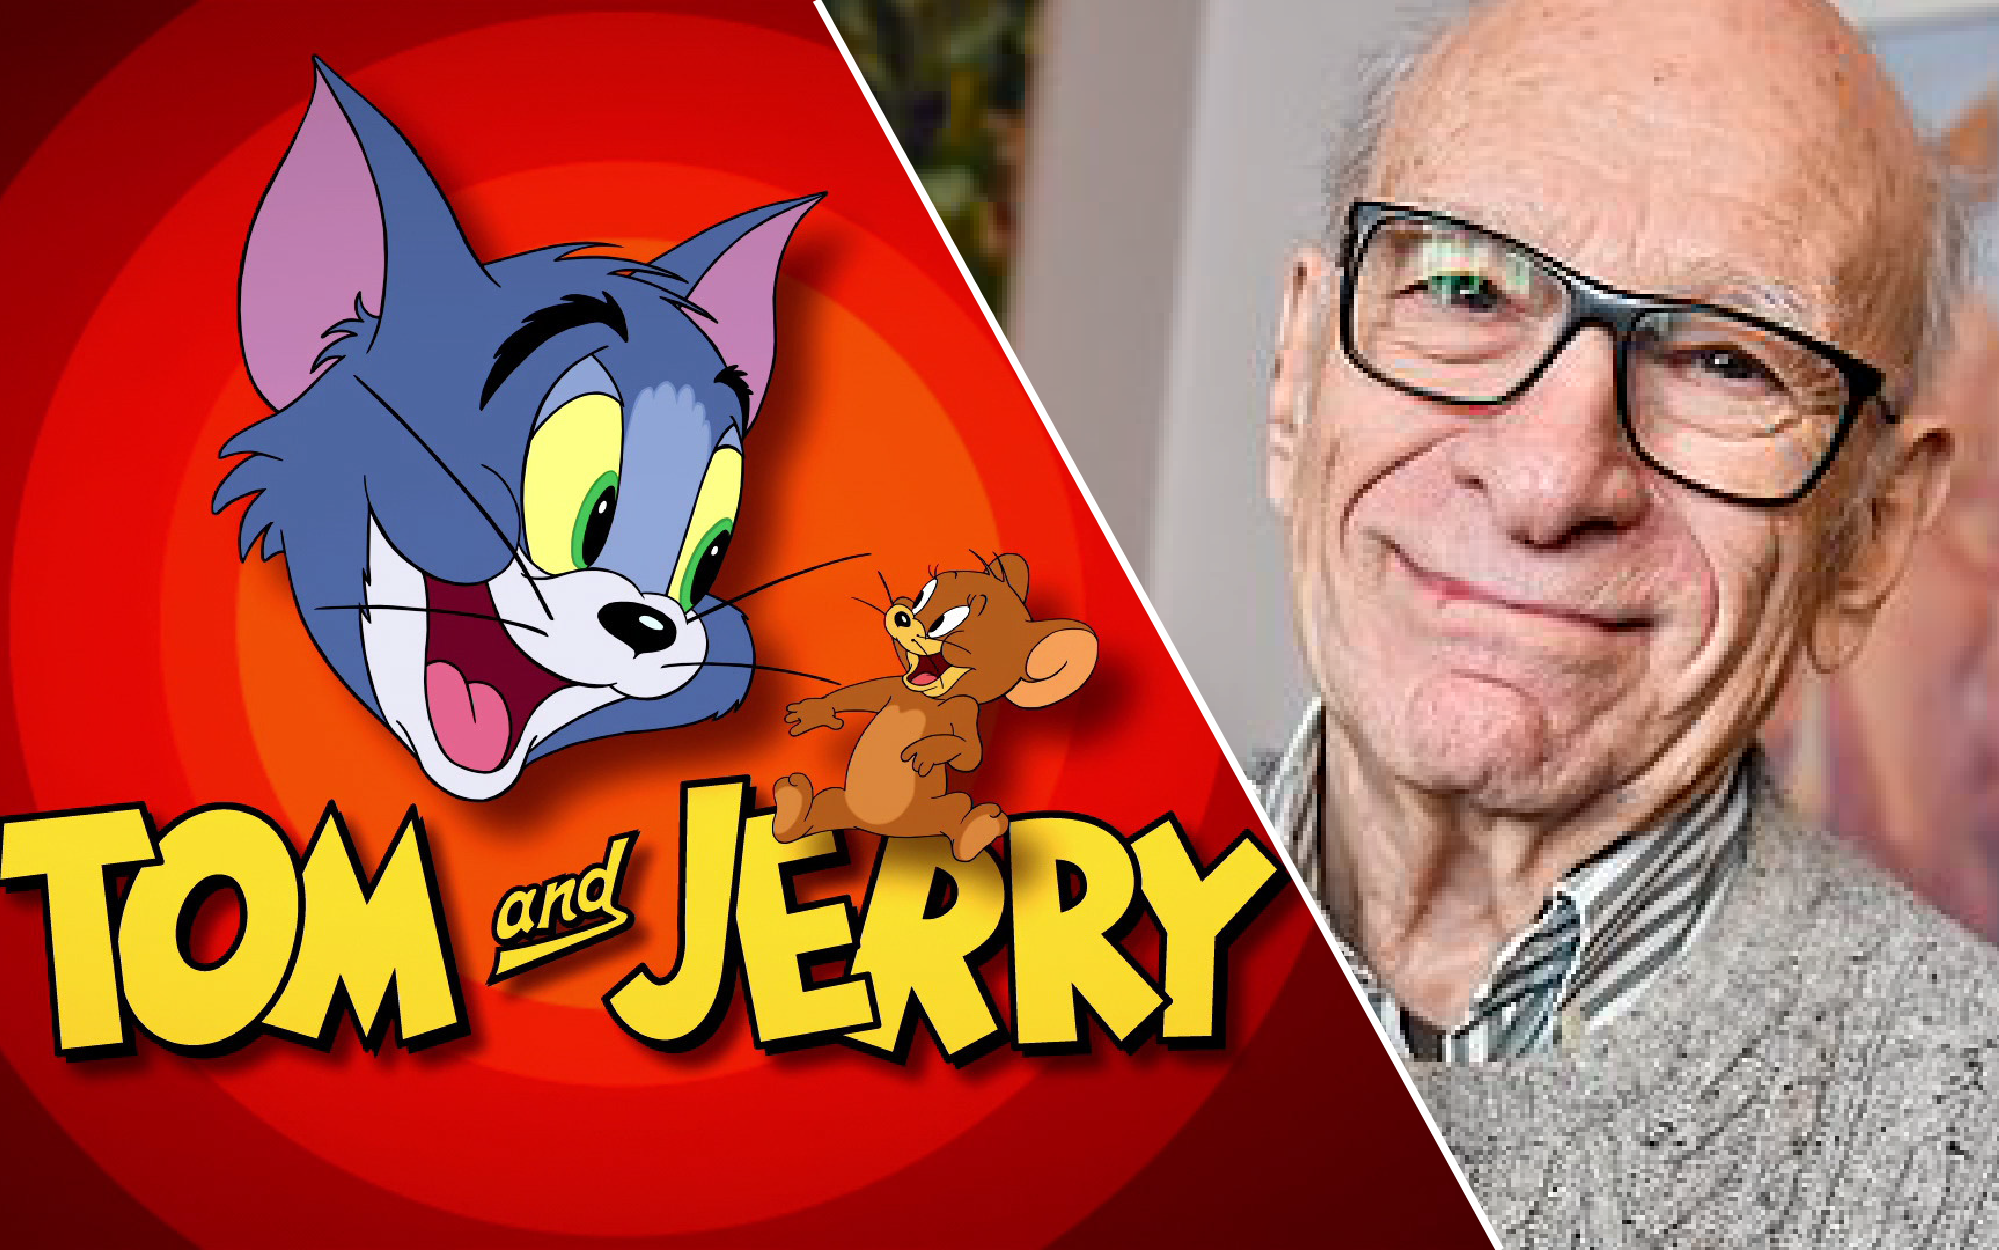 Đạo diễn &quot;Tom và Jerry&quot; - Gene Deitch đột ngột qua đời, cảm ơn ông vì đã tạo nên một phần tuổi thơ không thể quên!